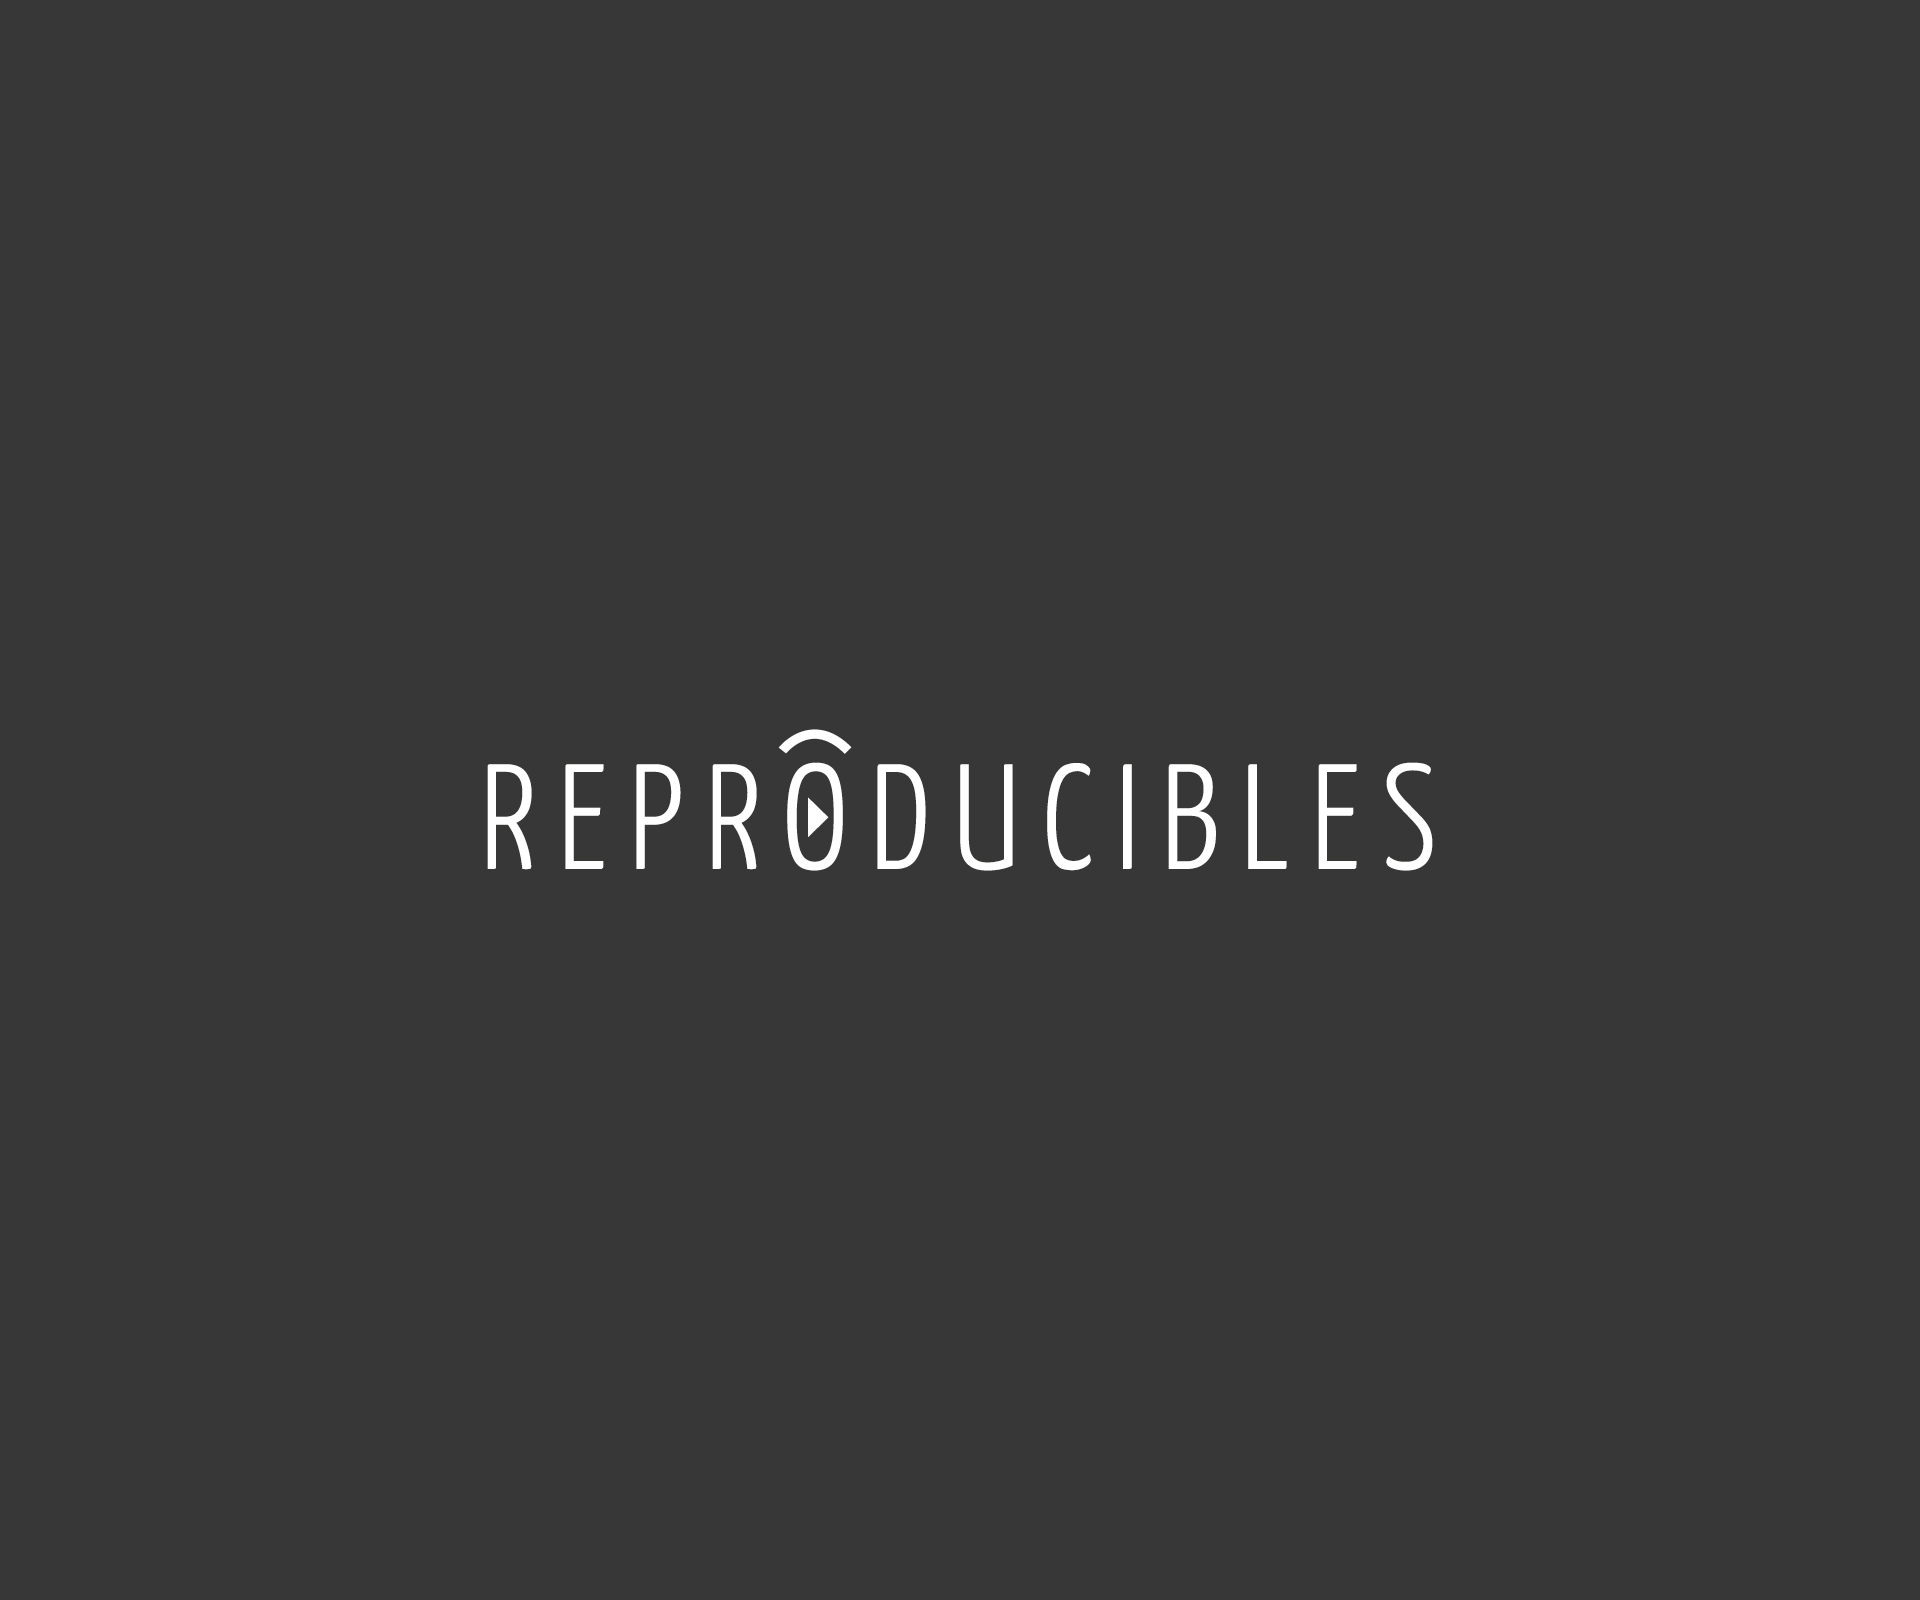 Reproducibles